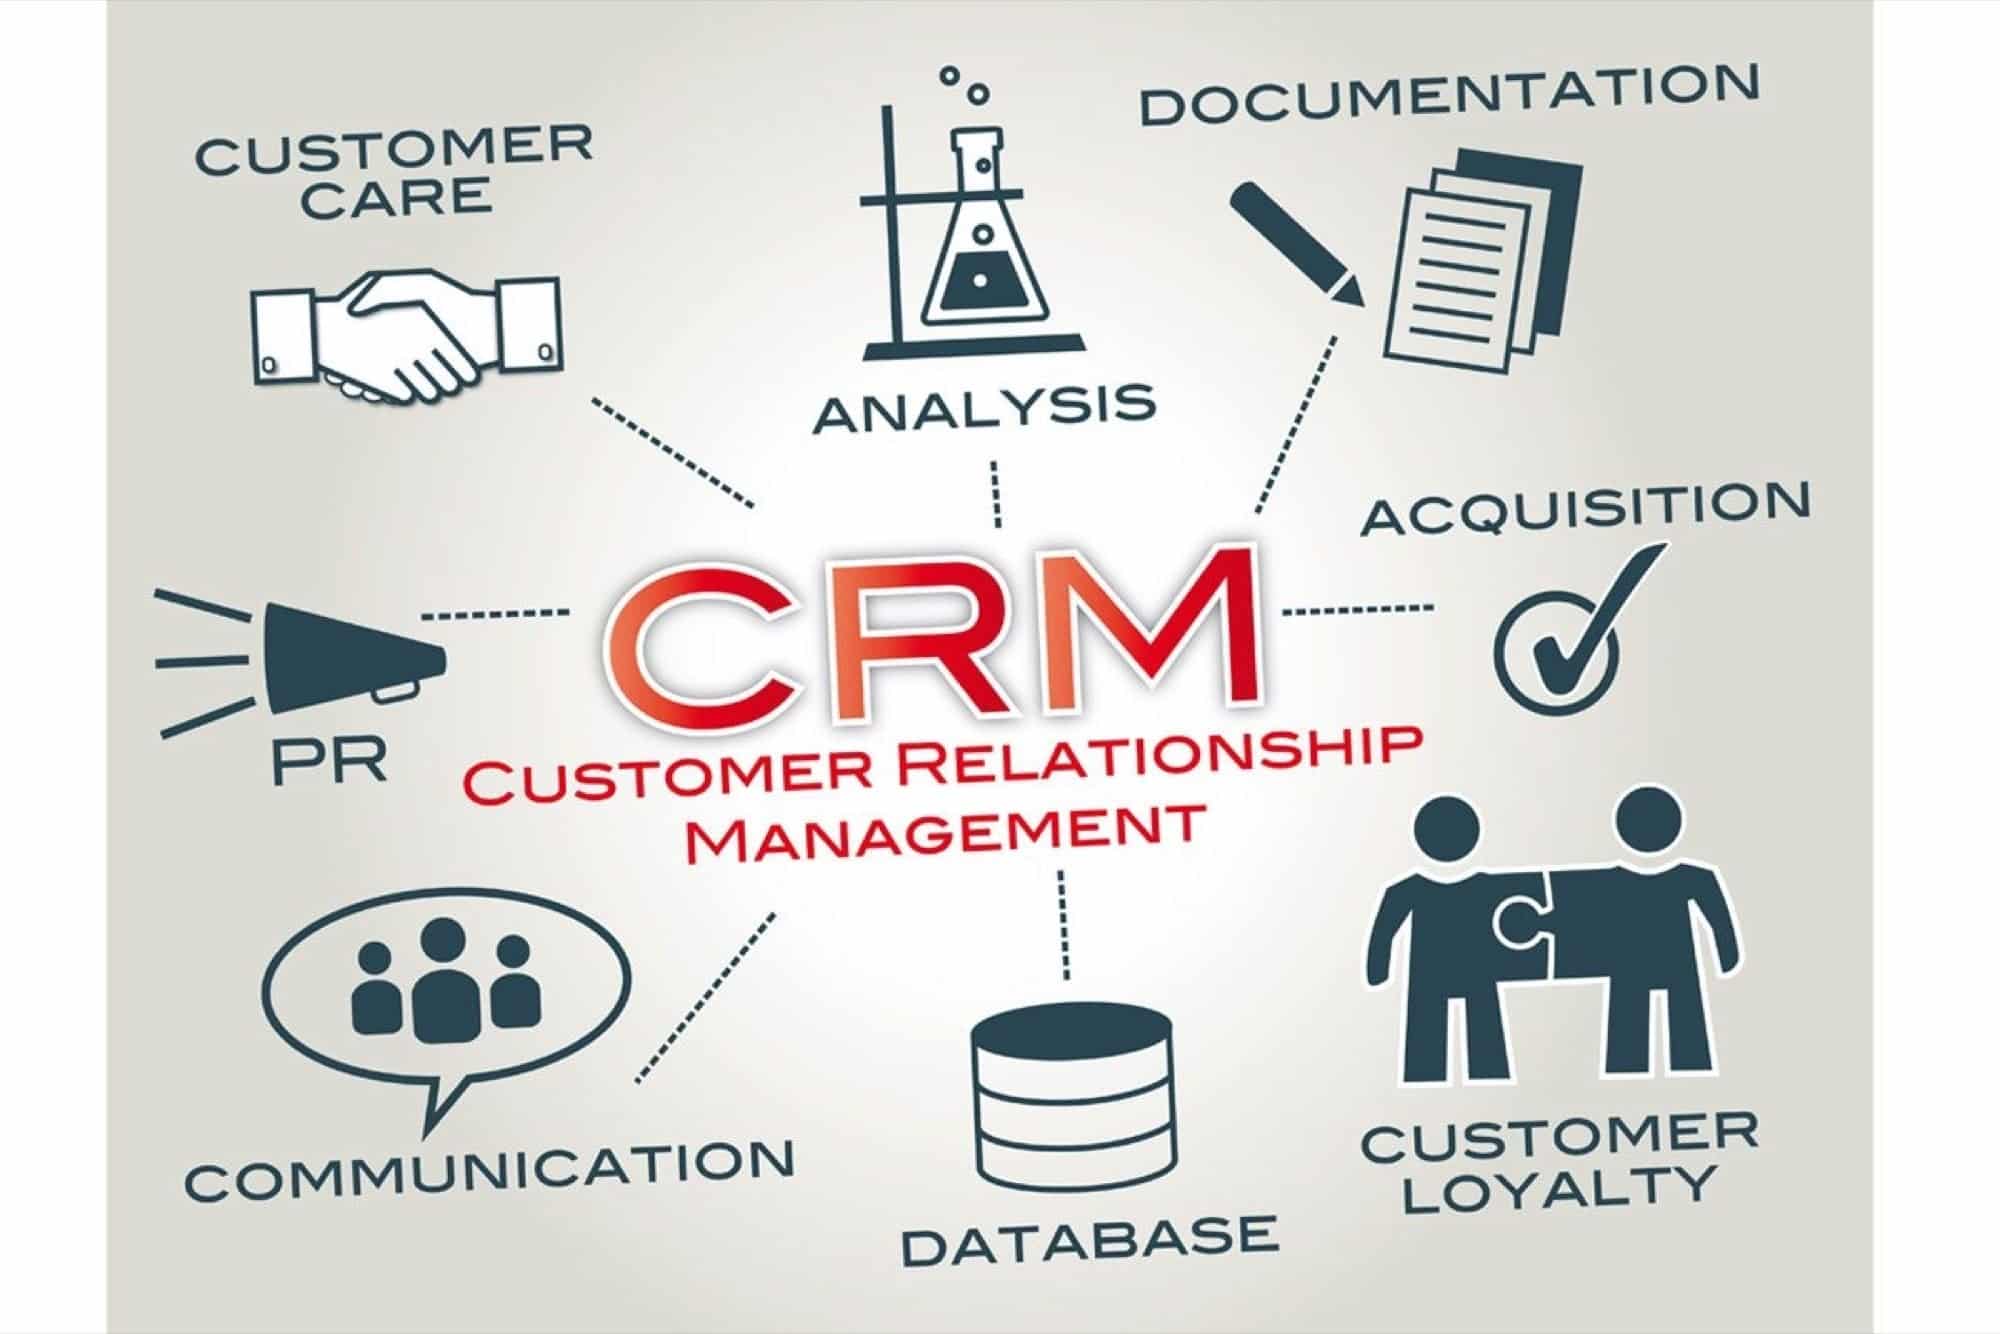 Müşteri İlişkileri Yönetimi (CRM)